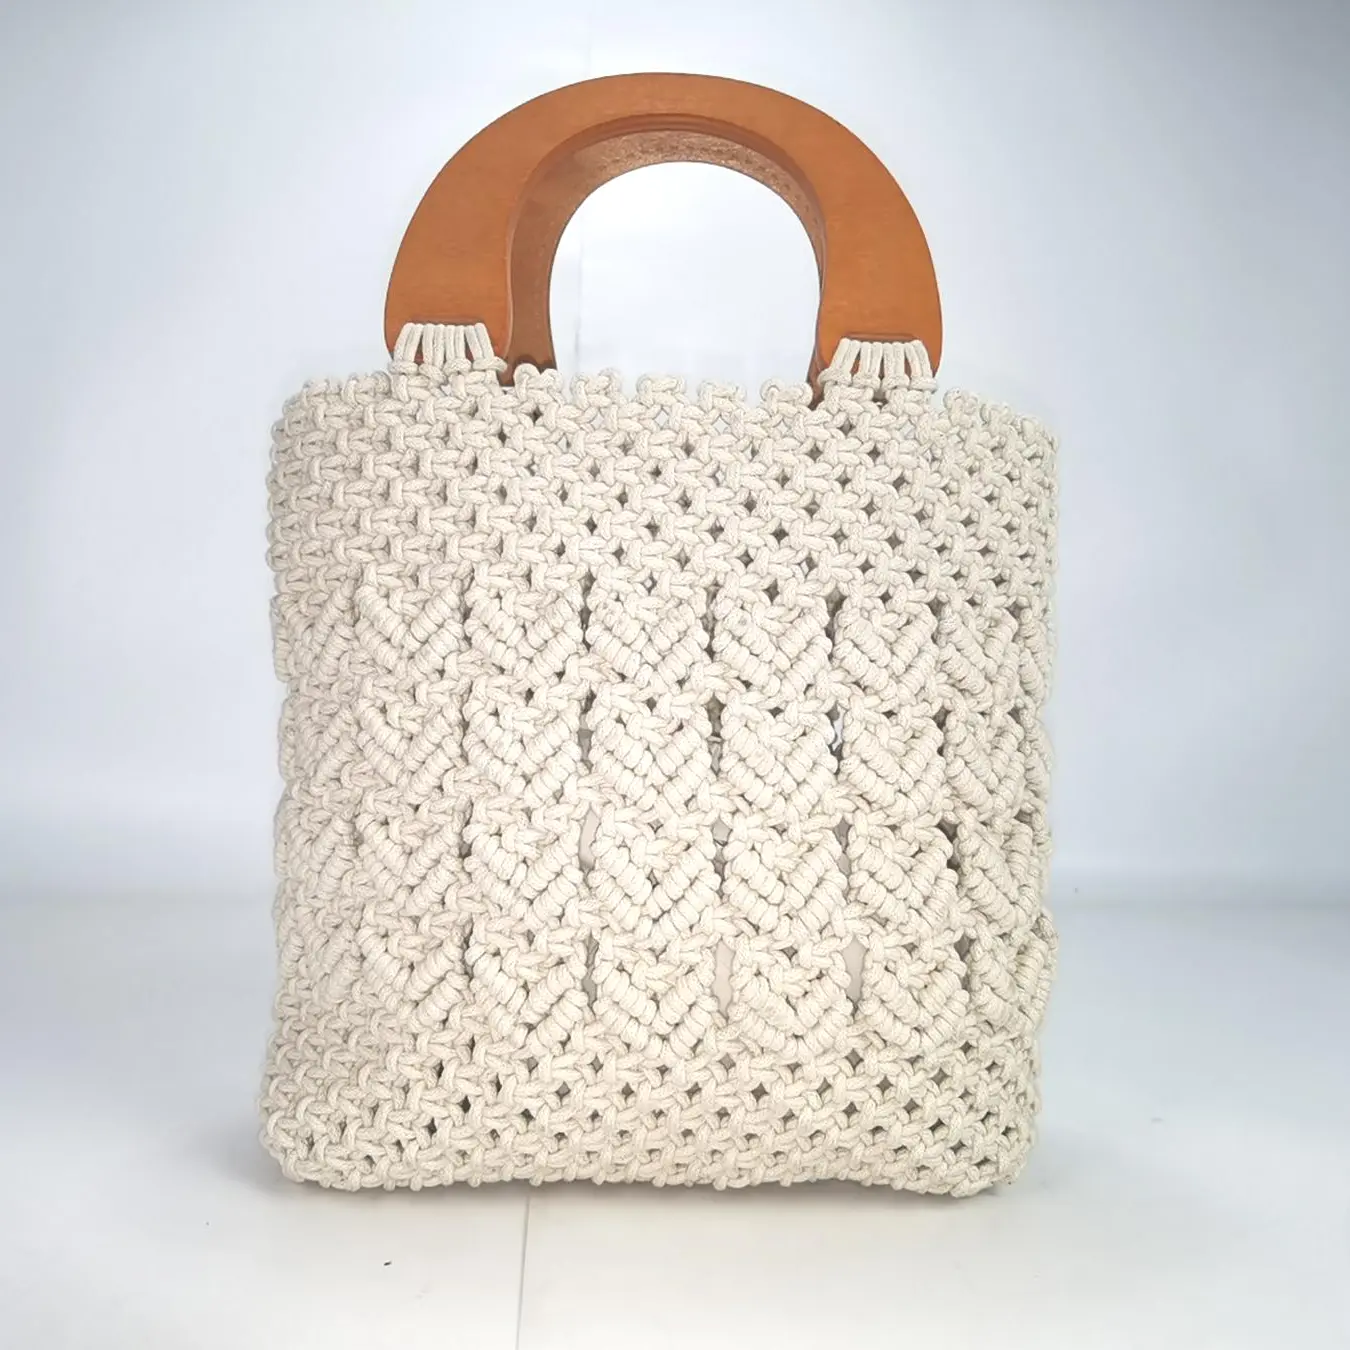 Nuova borsa da spiaggia turistica borsa da donna in legno intrecciata borsa in corda di cotone